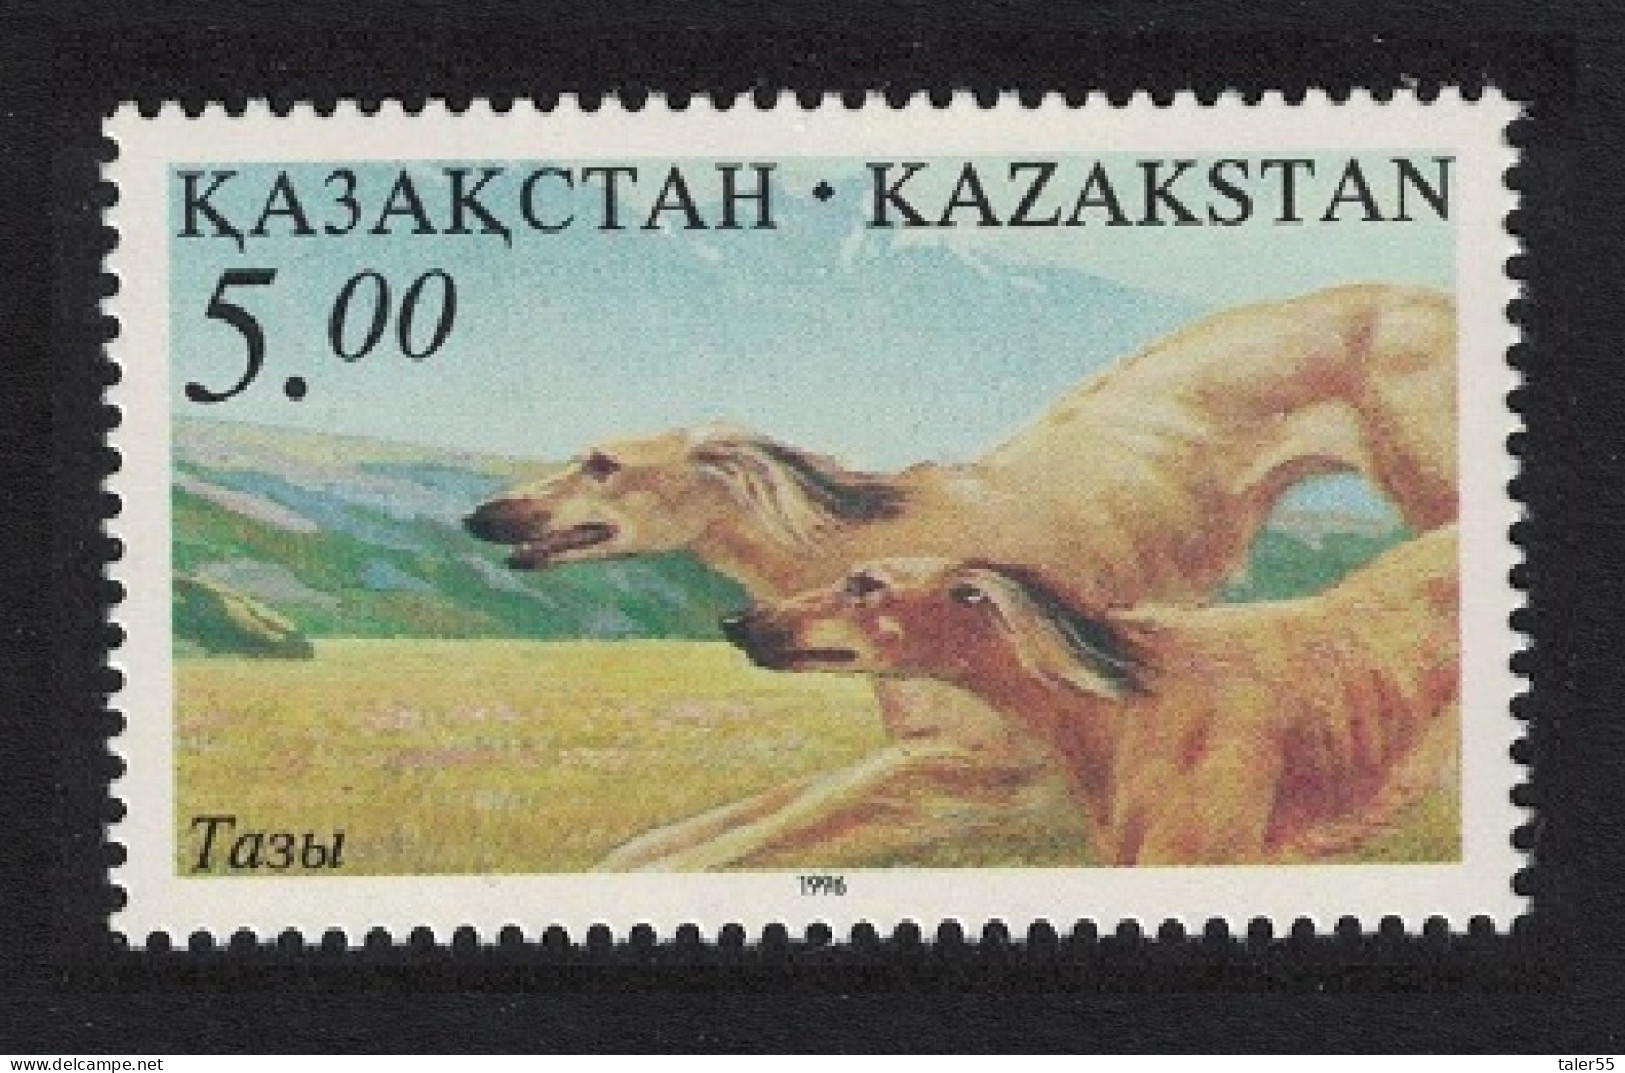 Kazakhstan Hunting Dogs 1996 MNH SG#140 - Kazakhstan